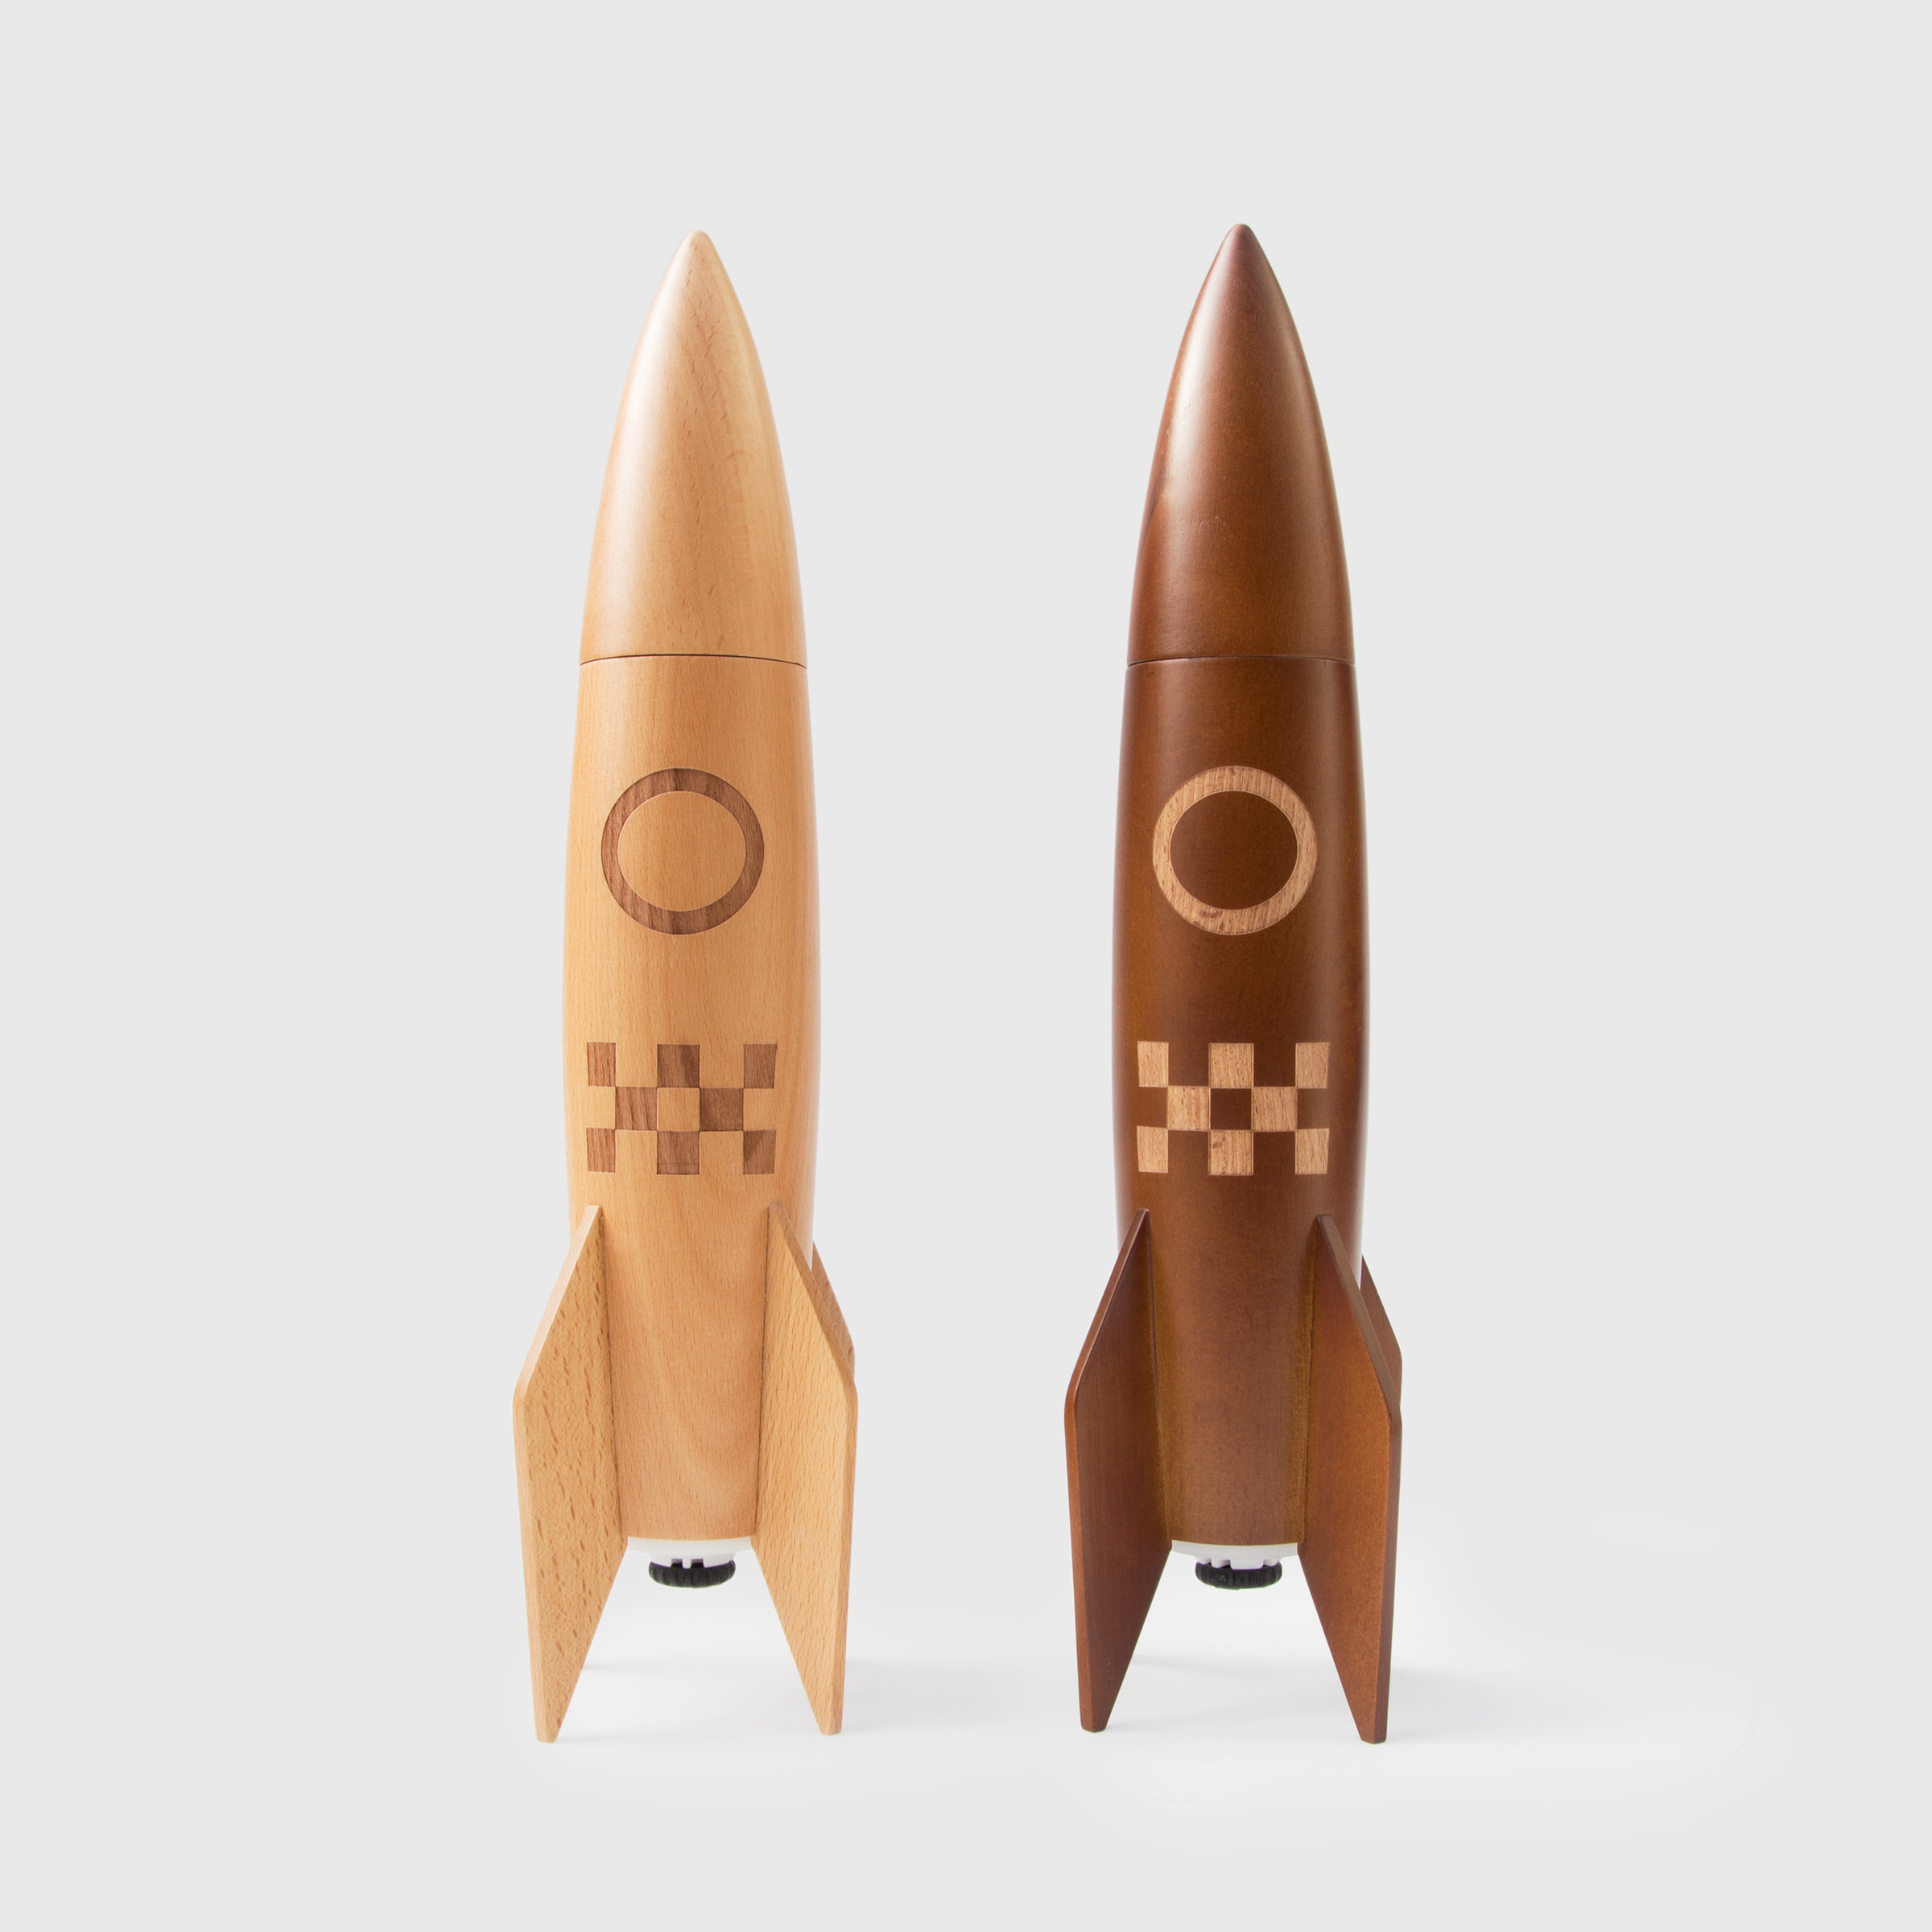 Wooden rocket salt and pepper grinders